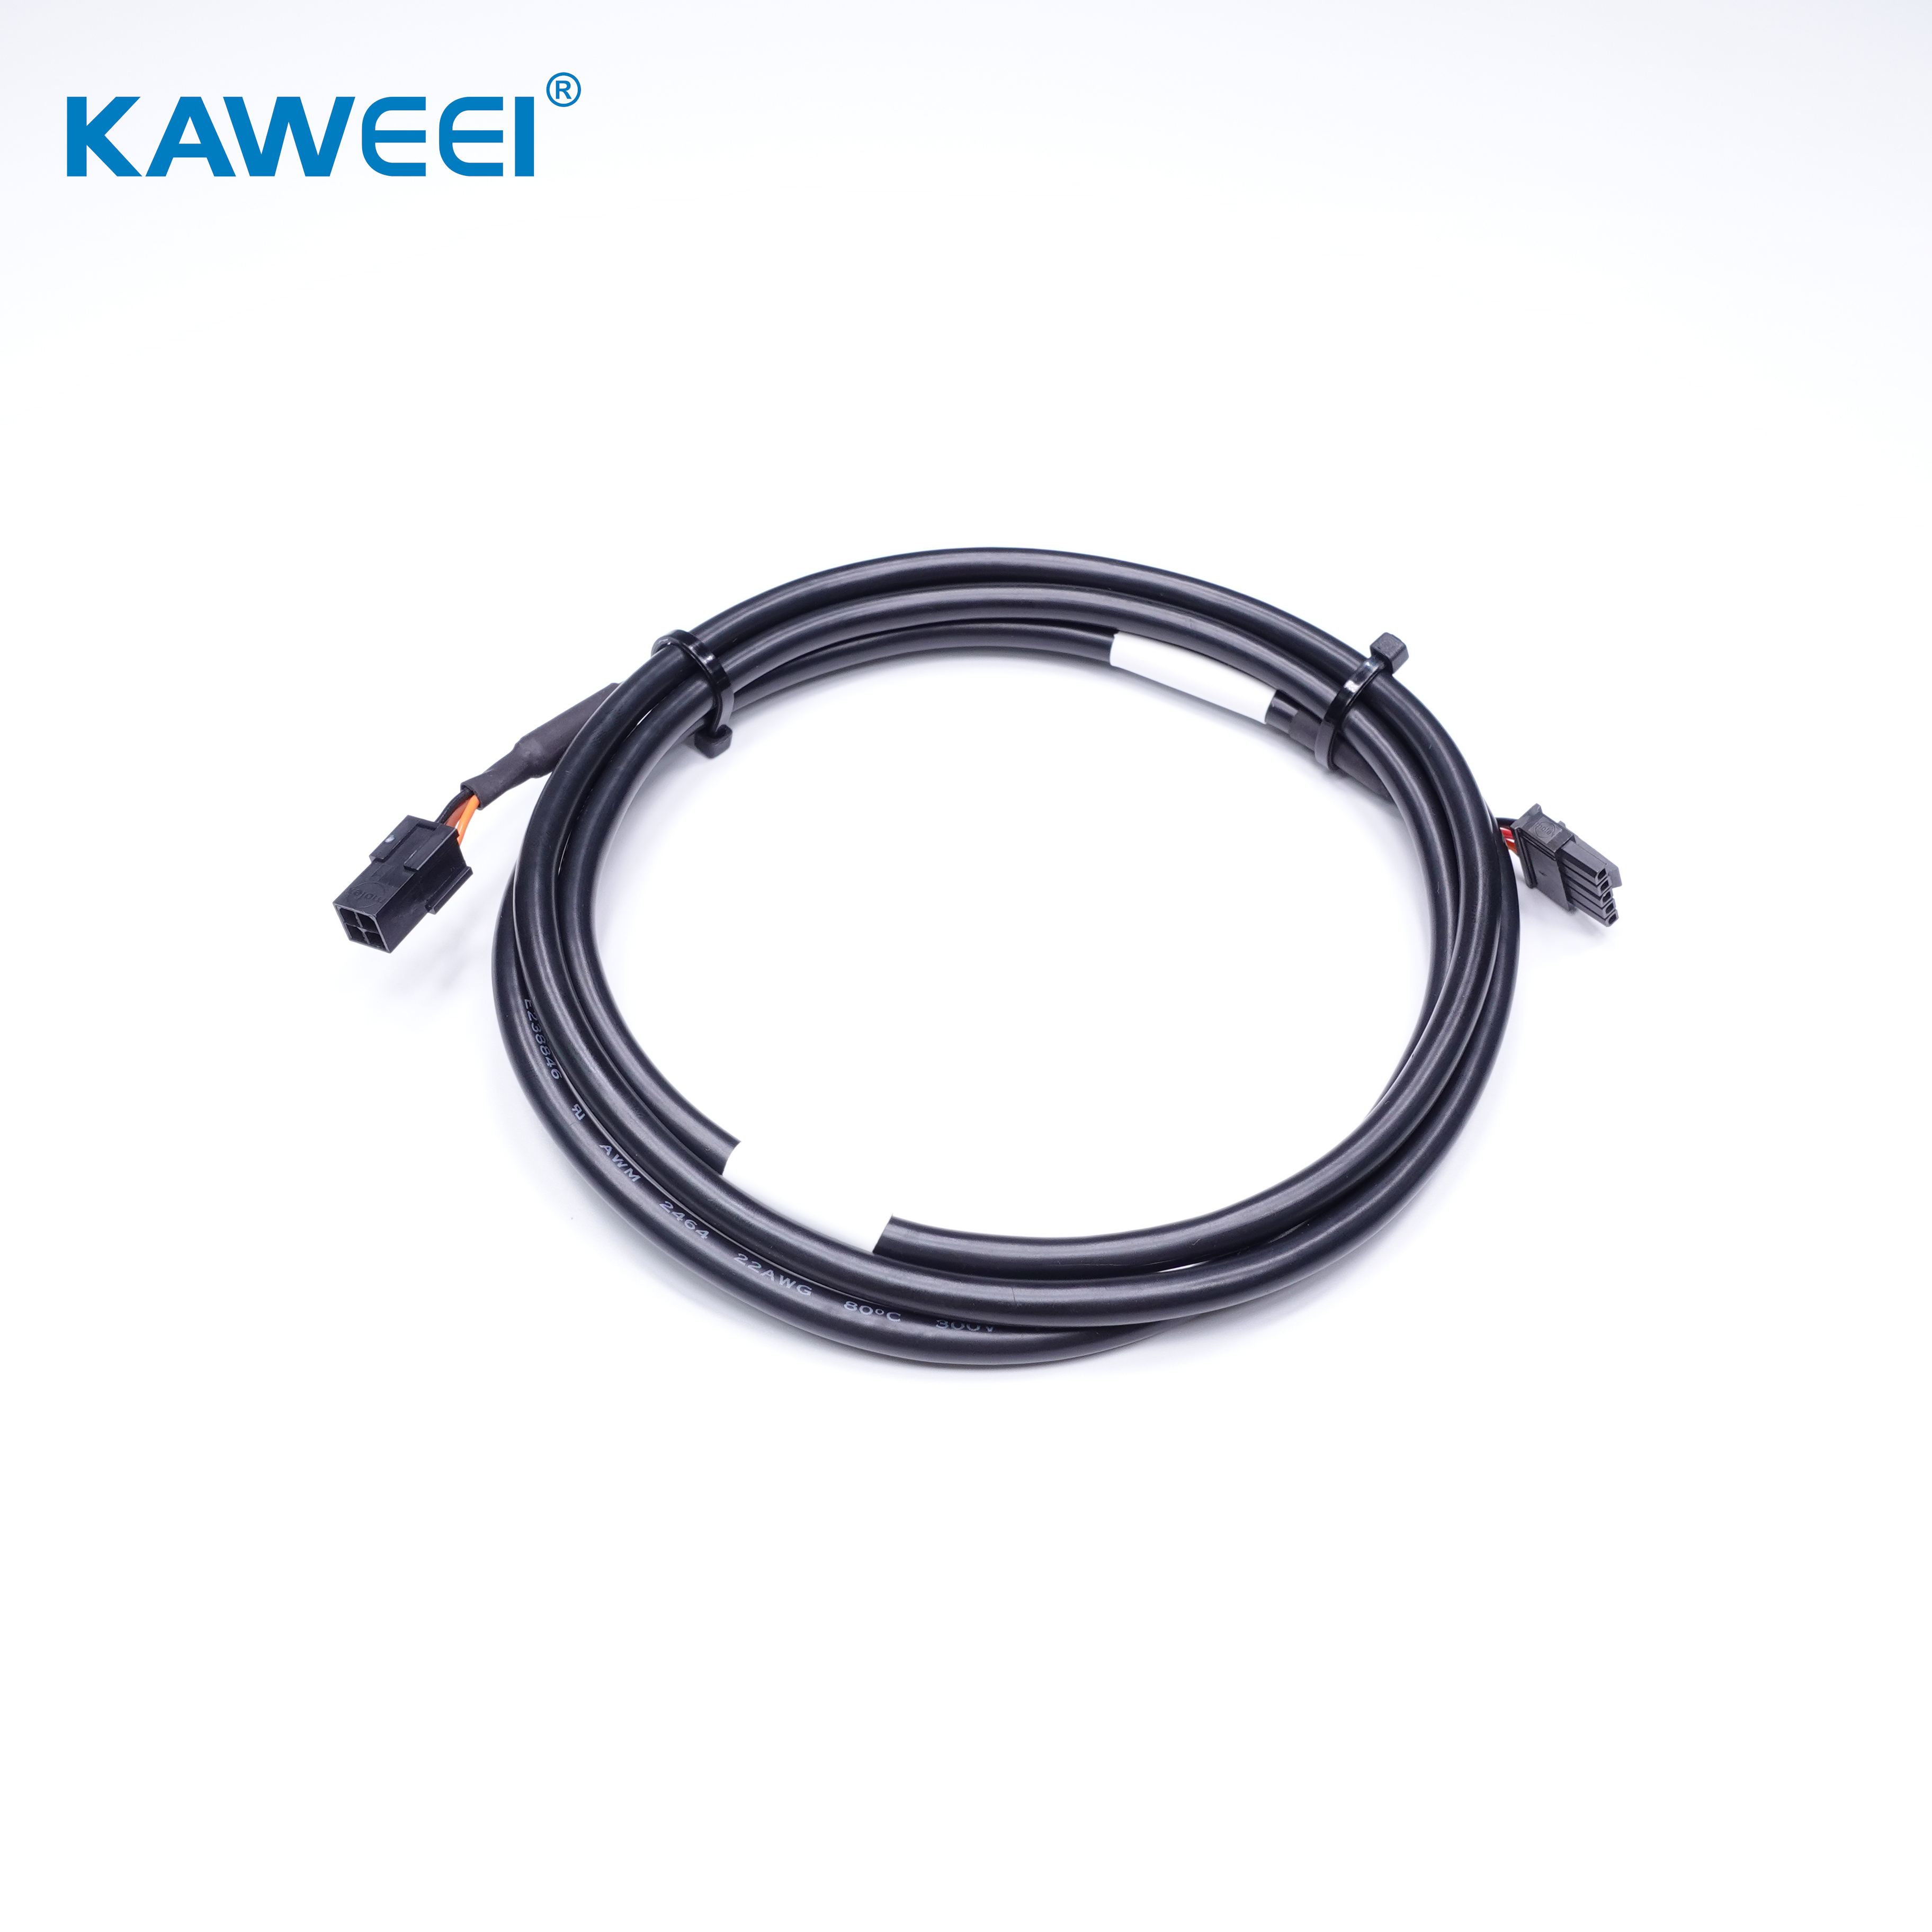 Molex 3.0mm Housing Kabel Industrial Majelis Extension Kabel